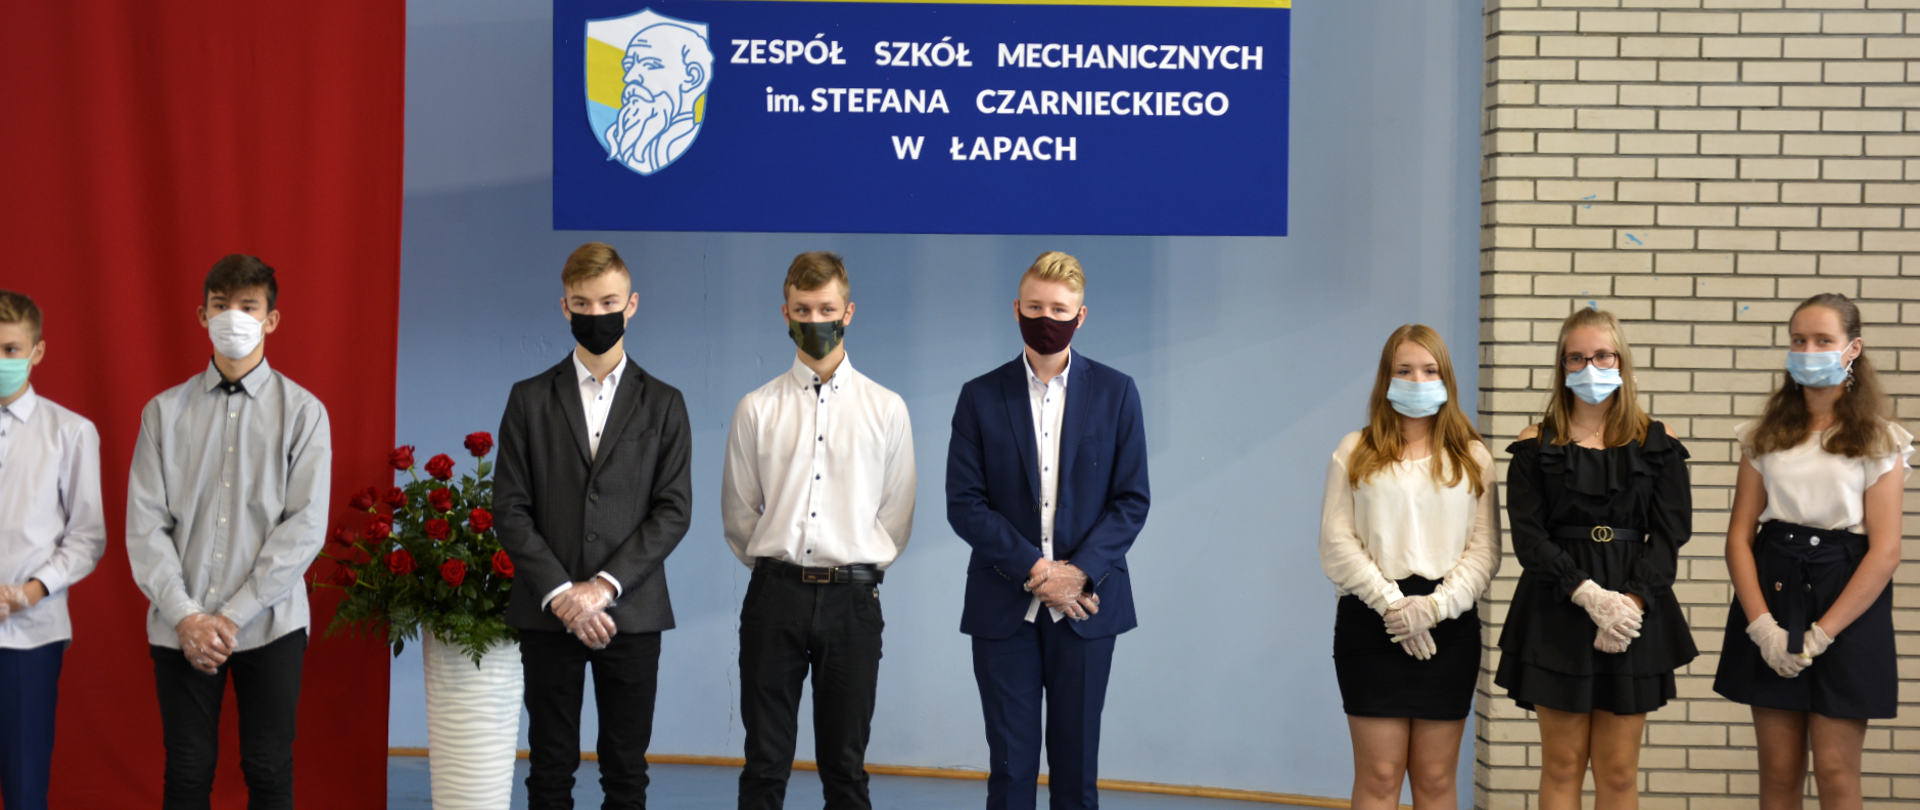 Ogólnopolska inauguracja roku szkolnego 2020/2021 w Łapach